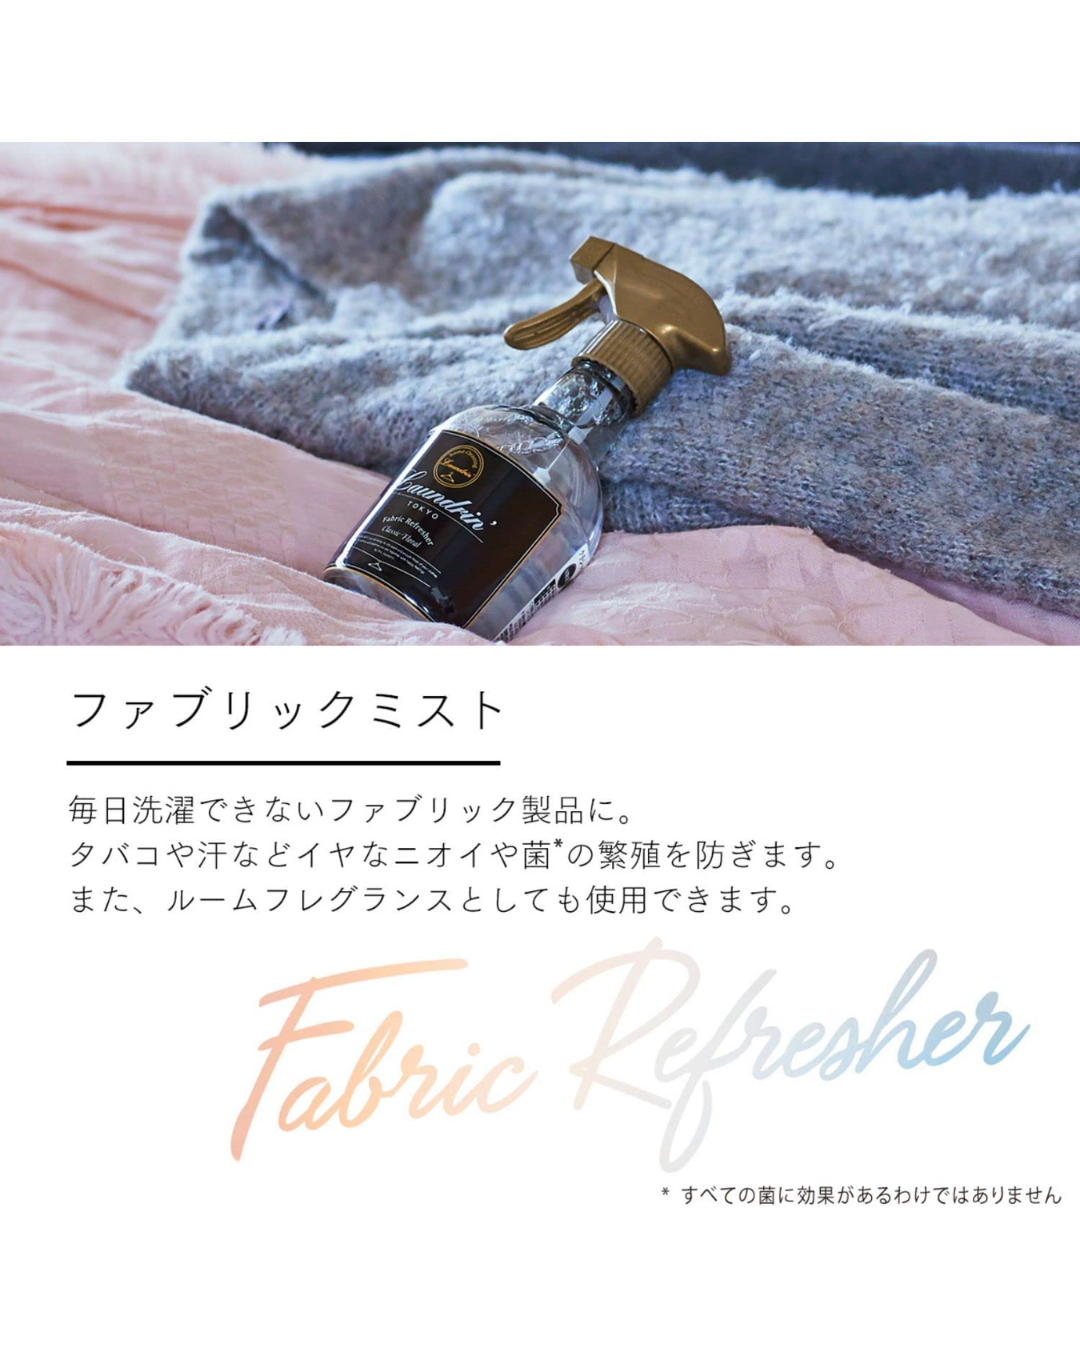 Laundrin Fabric Refresher | Classic Fiore